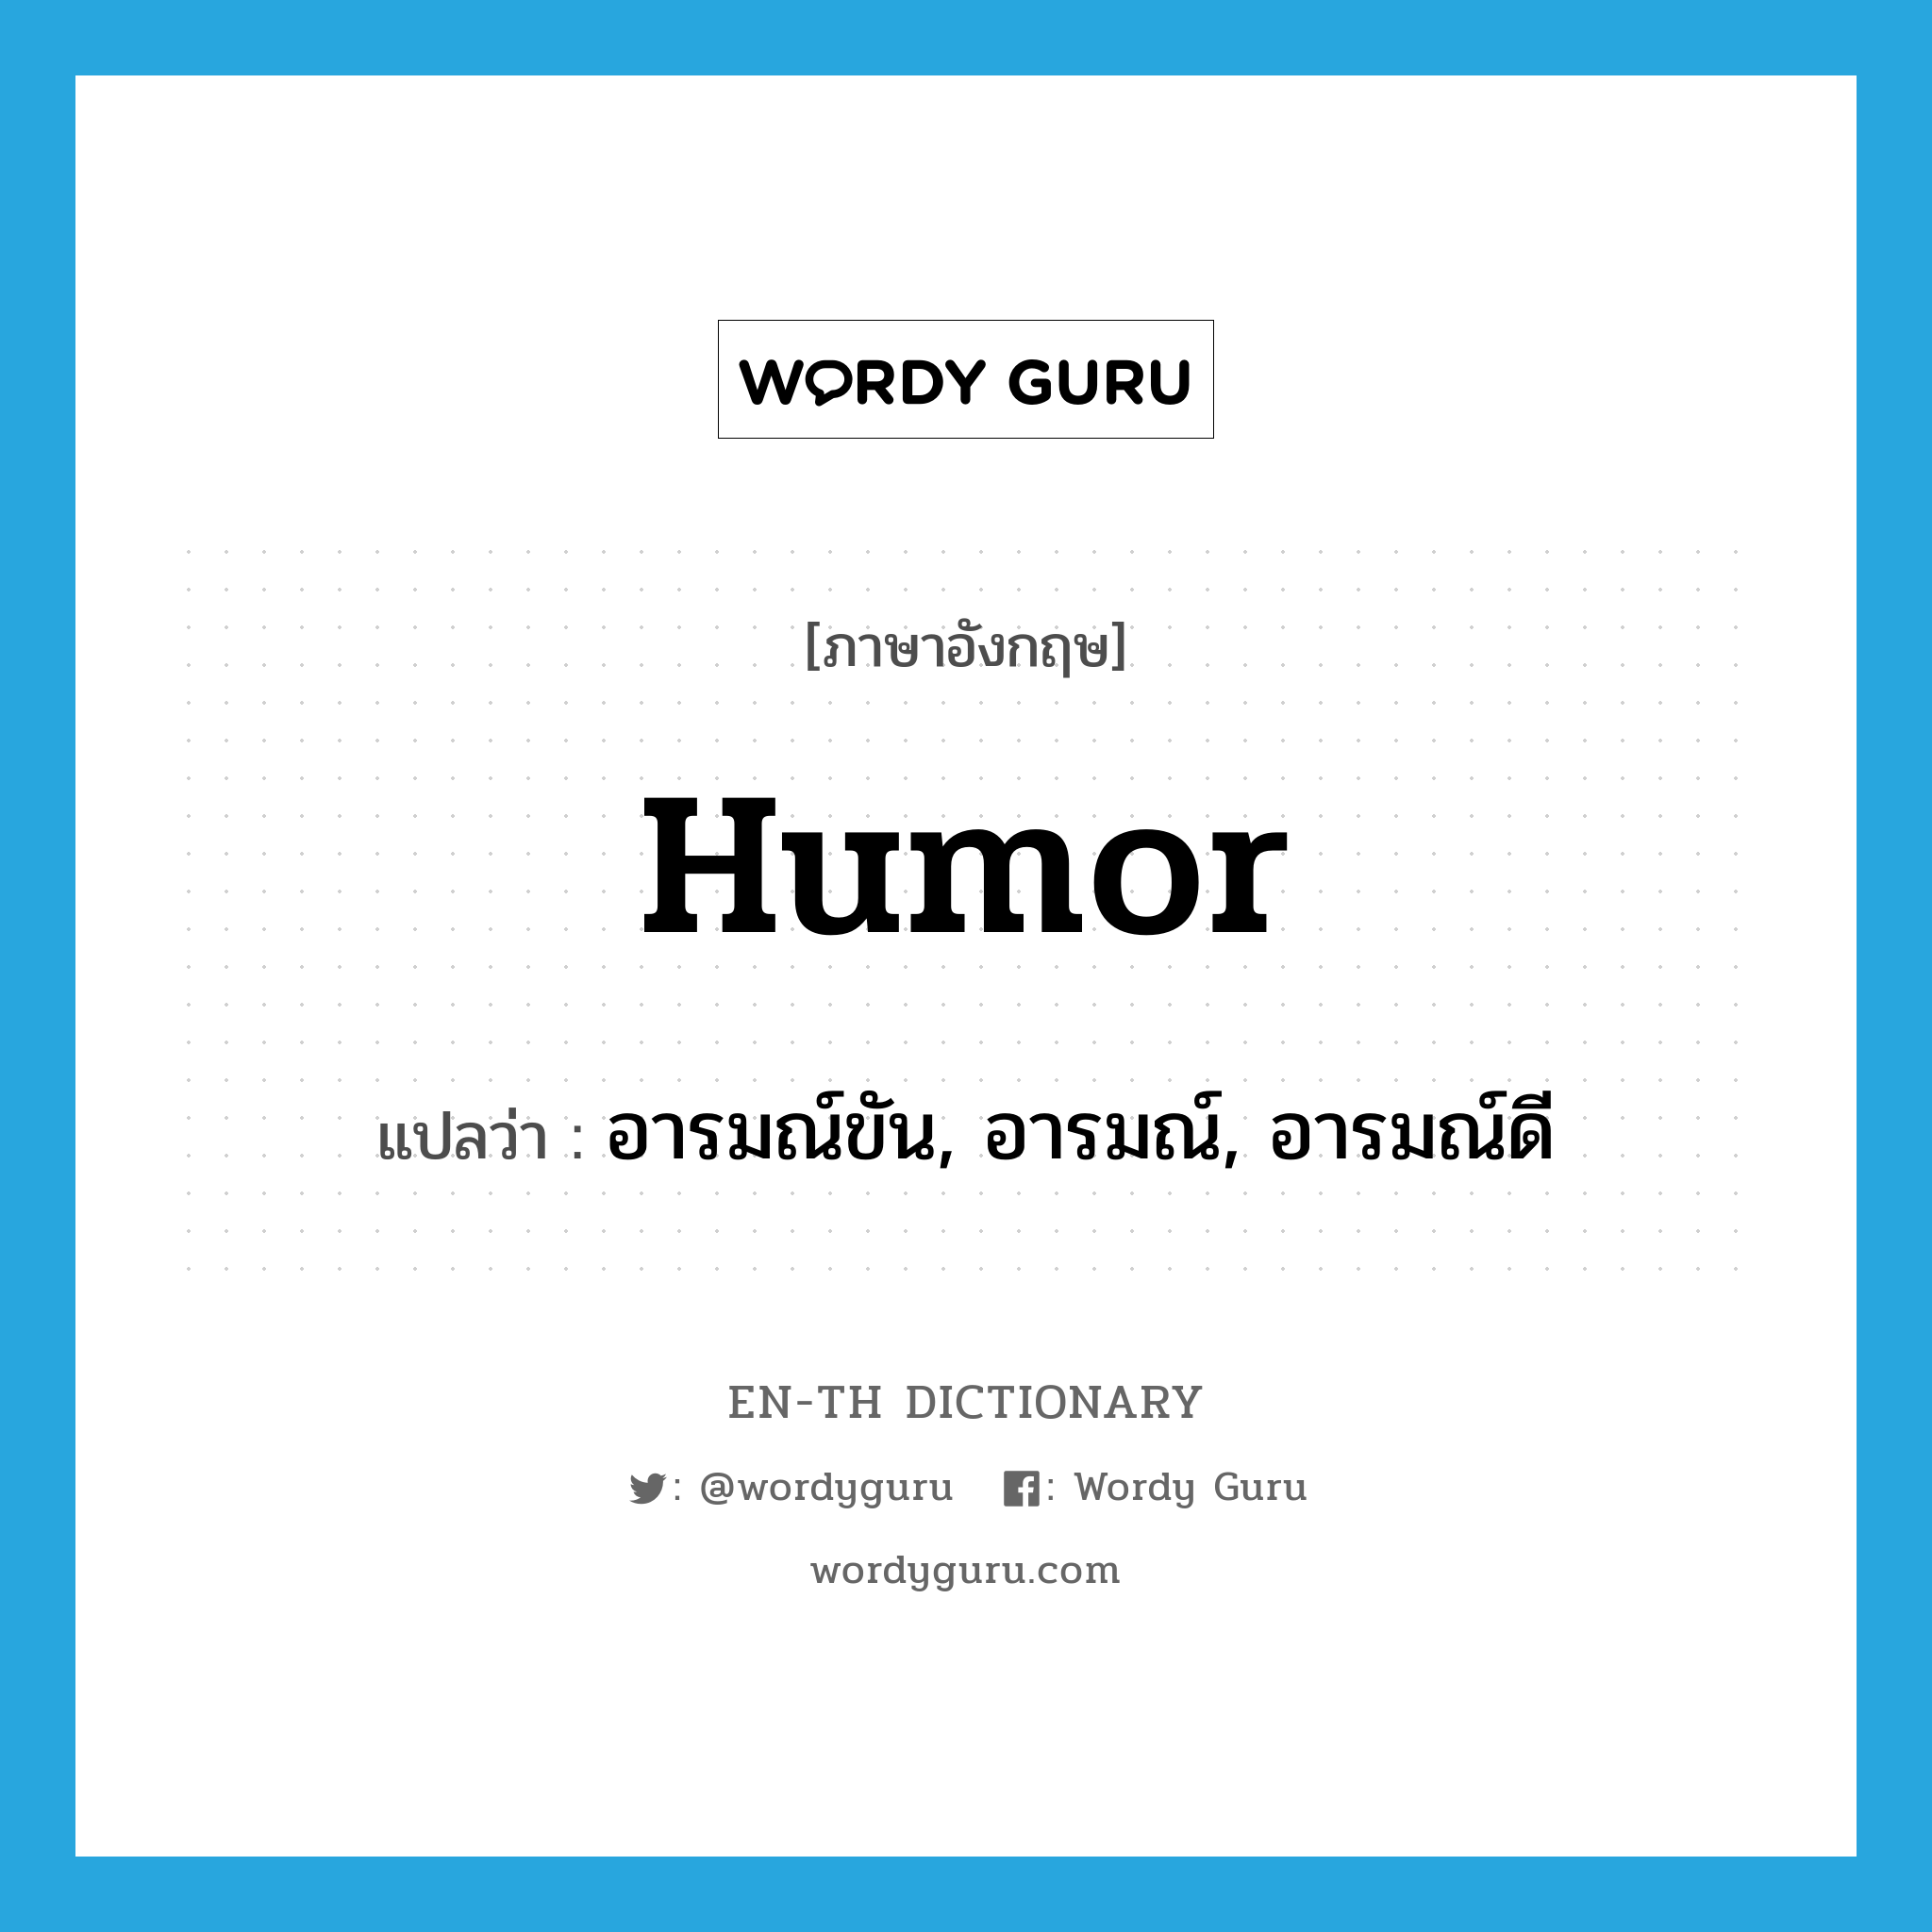 humor แปลว่า?, คำศัพท์ภาษาอังกฤษ humor แปลว่า อารมณ์ขัน, อารมณ์, อารมณ์ดี ประเภท N หมวด N